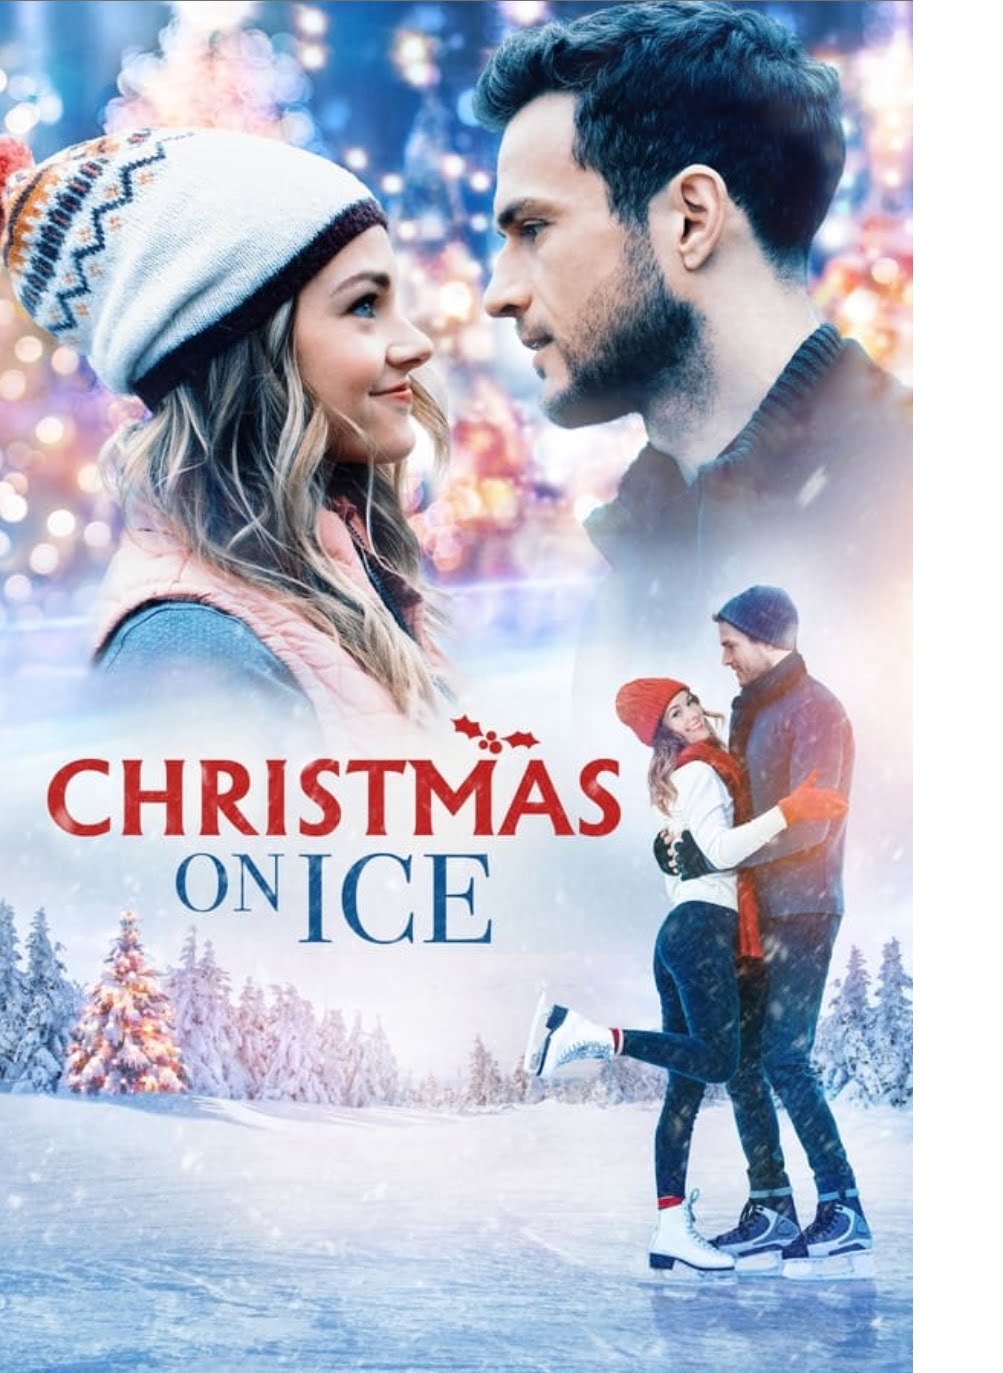 Plakát pro film “Vánoce na ledě”